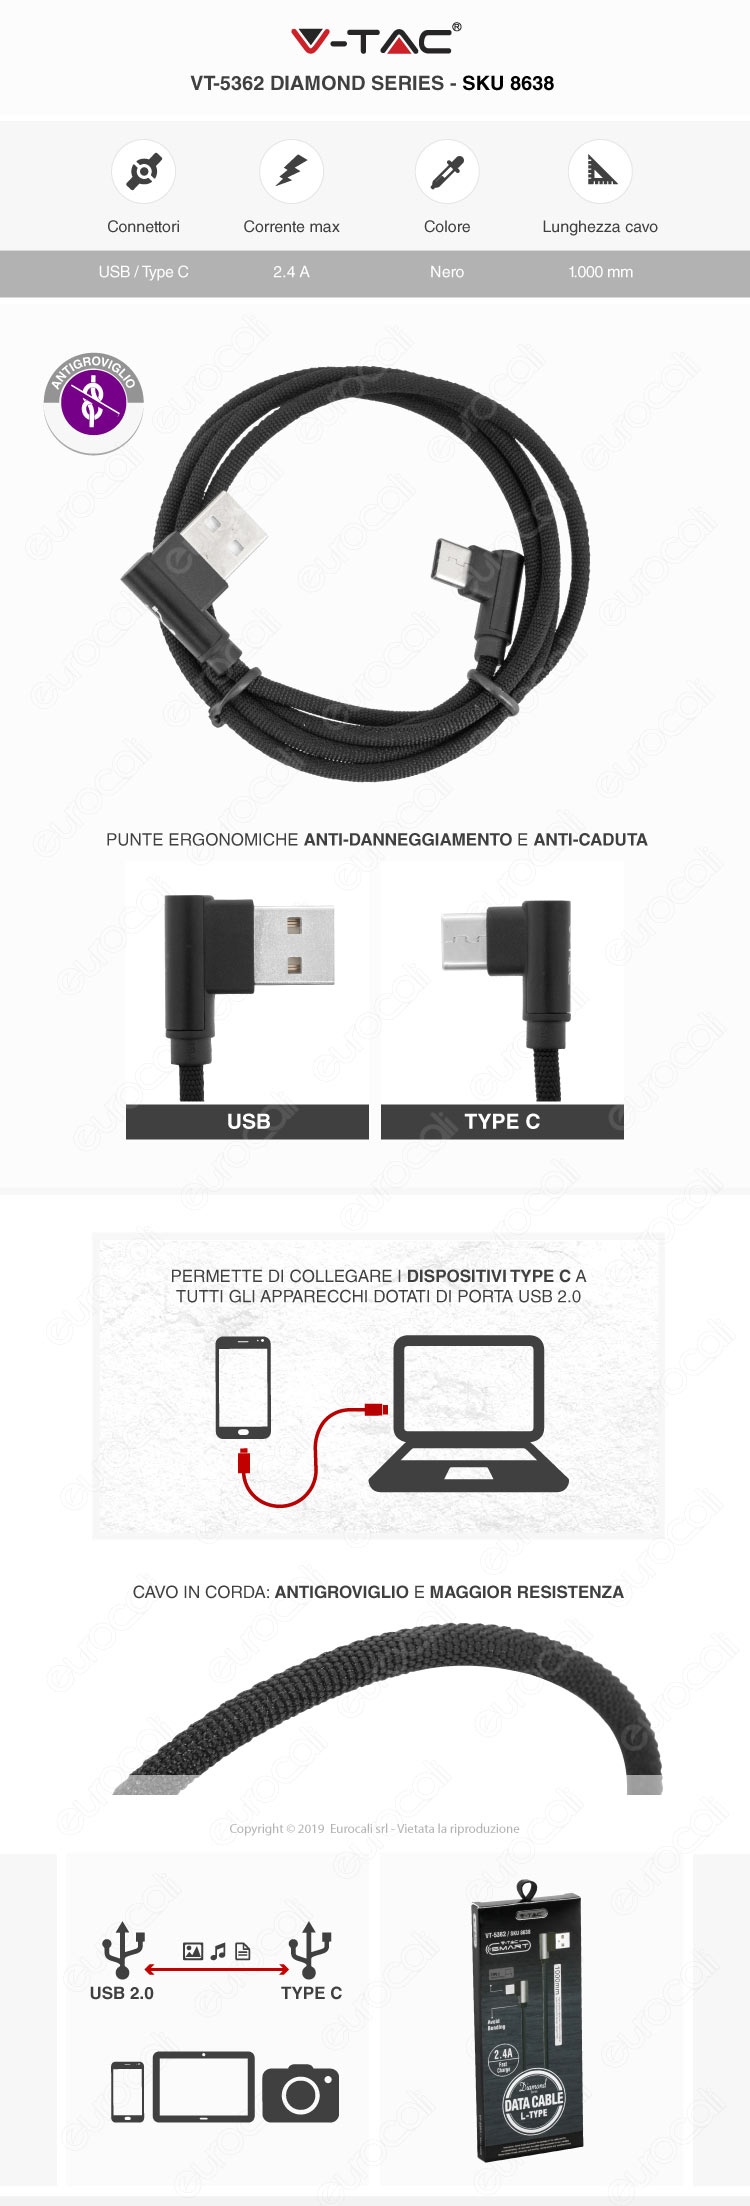 V-Tac VT-5331 platinum series USB Data Cable micro usb Cavo in corda Colore Oro 1m